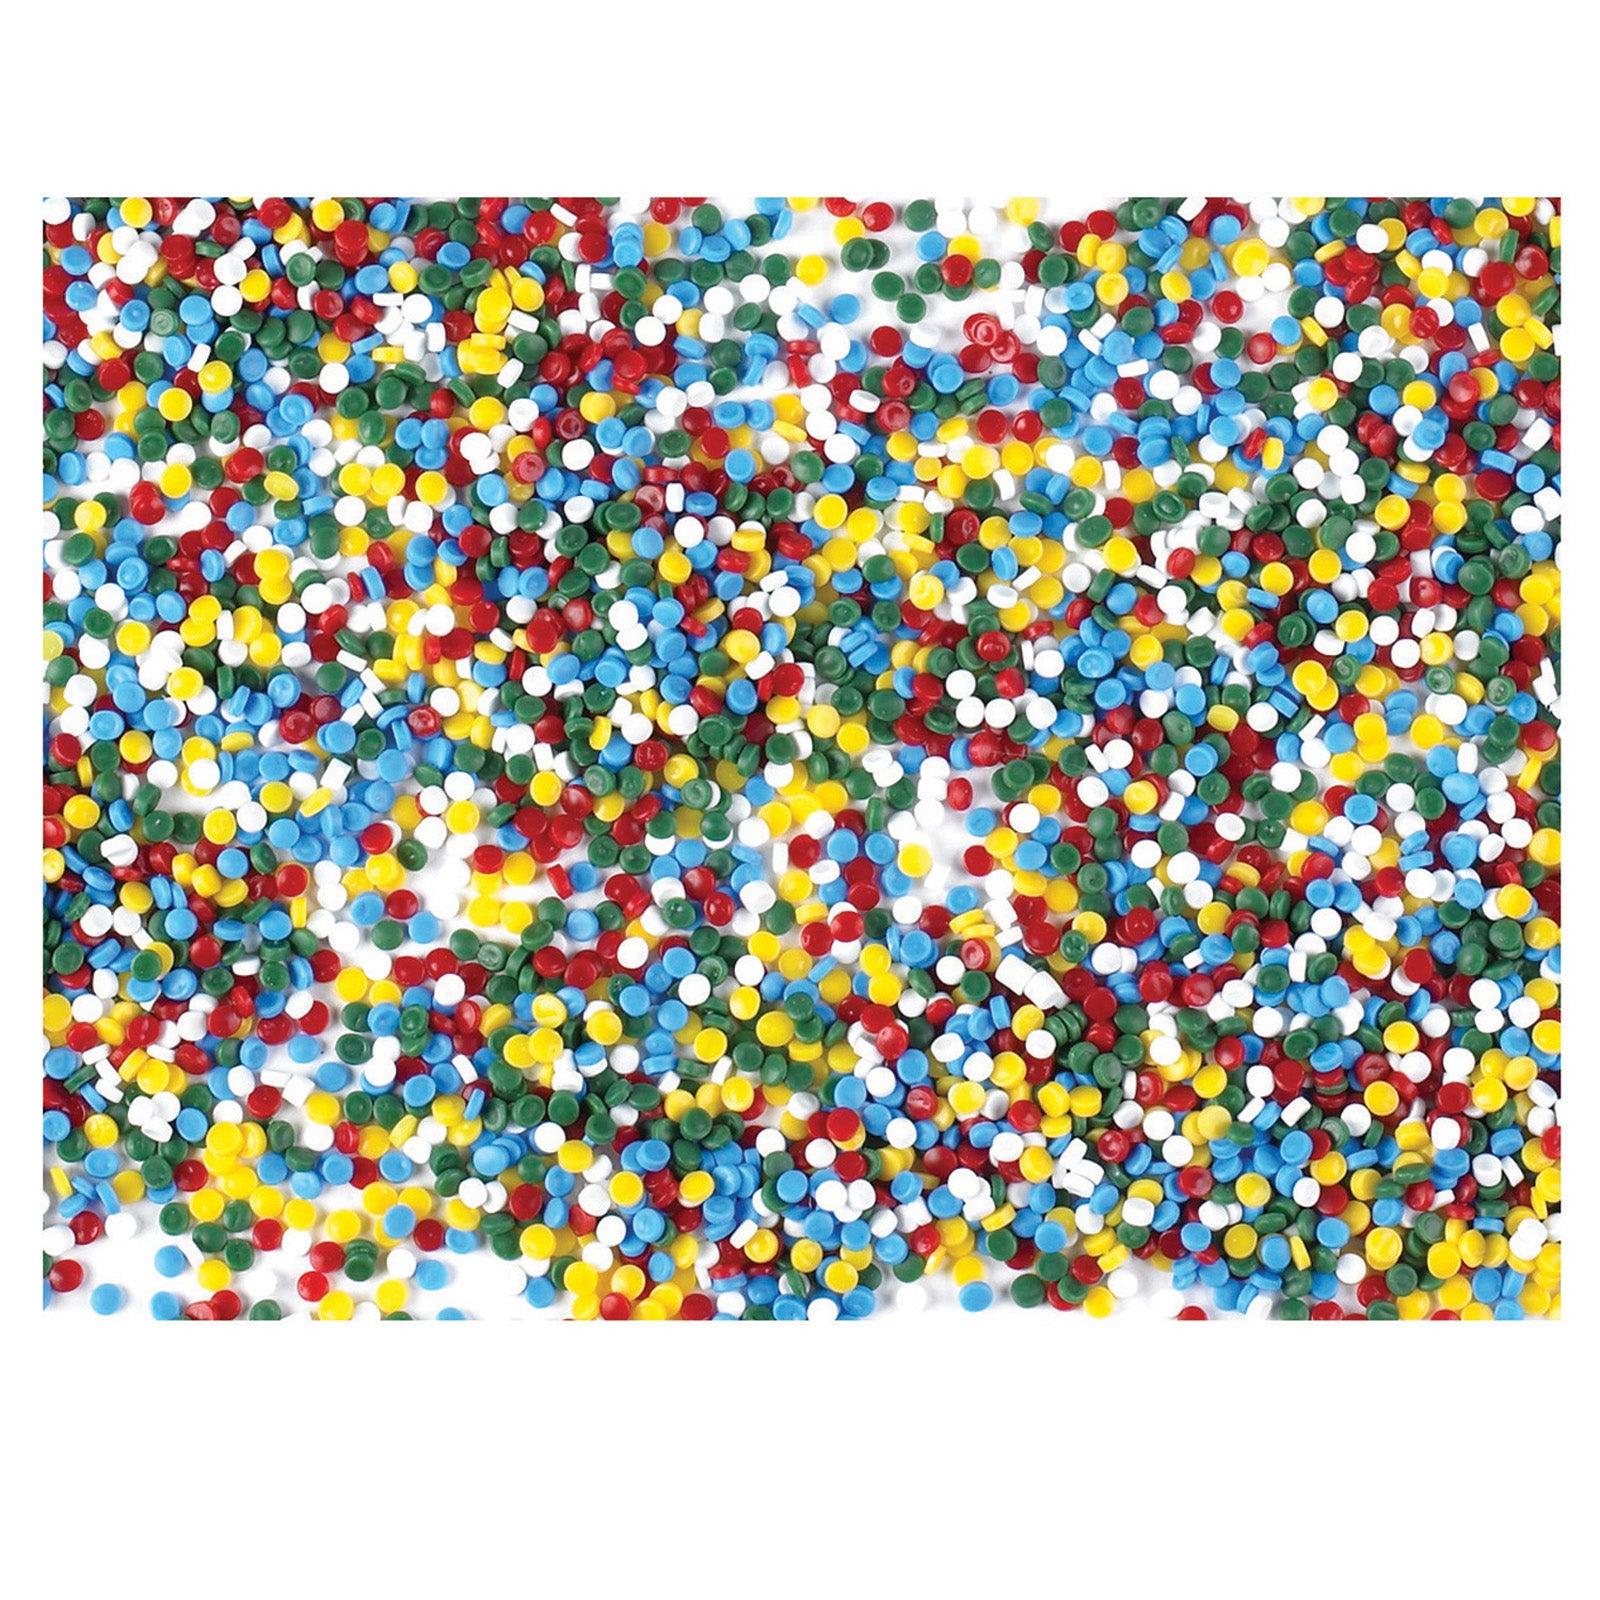 Multi-Colored Kidfetti Play Pellets, 10 lbs - Loomini